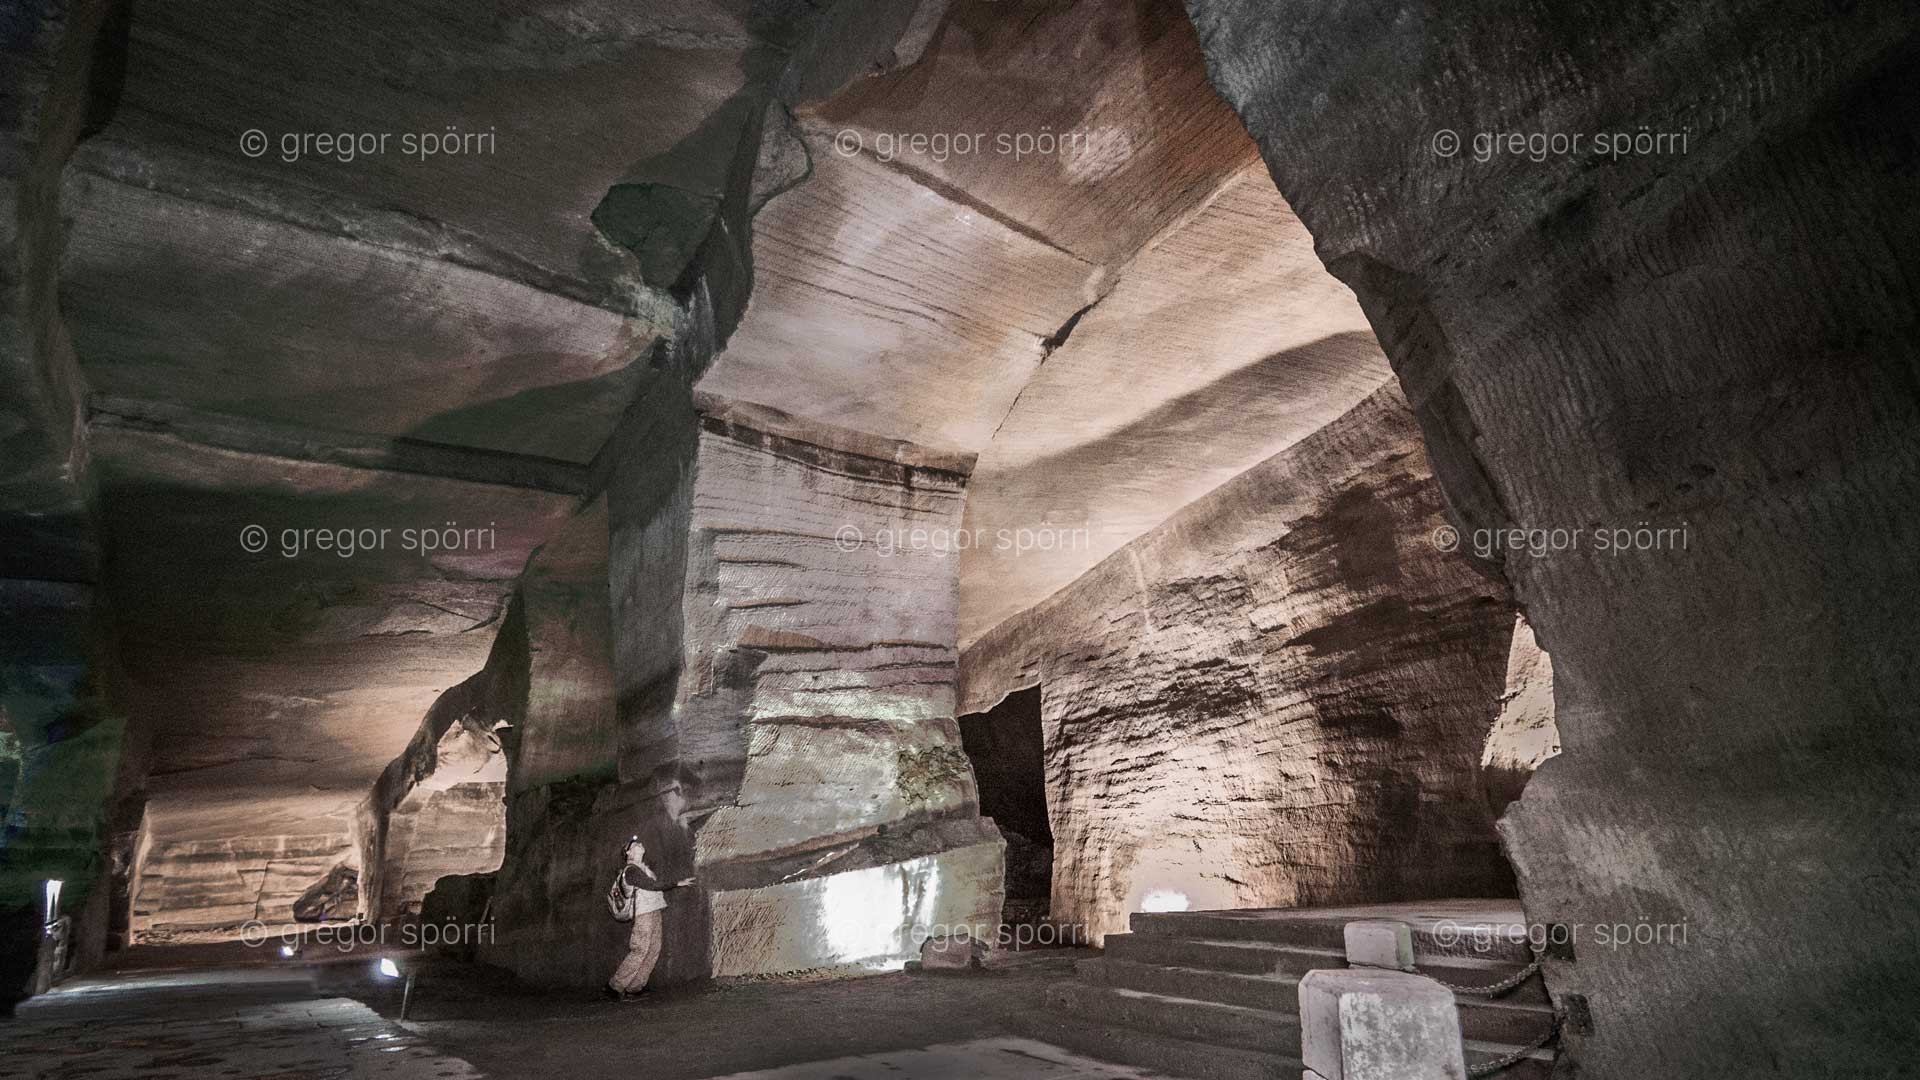 Die China-Grotten von Huang Shan (Blumenberg): Gregor Spörri erkundet den Eingangsbereich der bizarren Unterwelt.